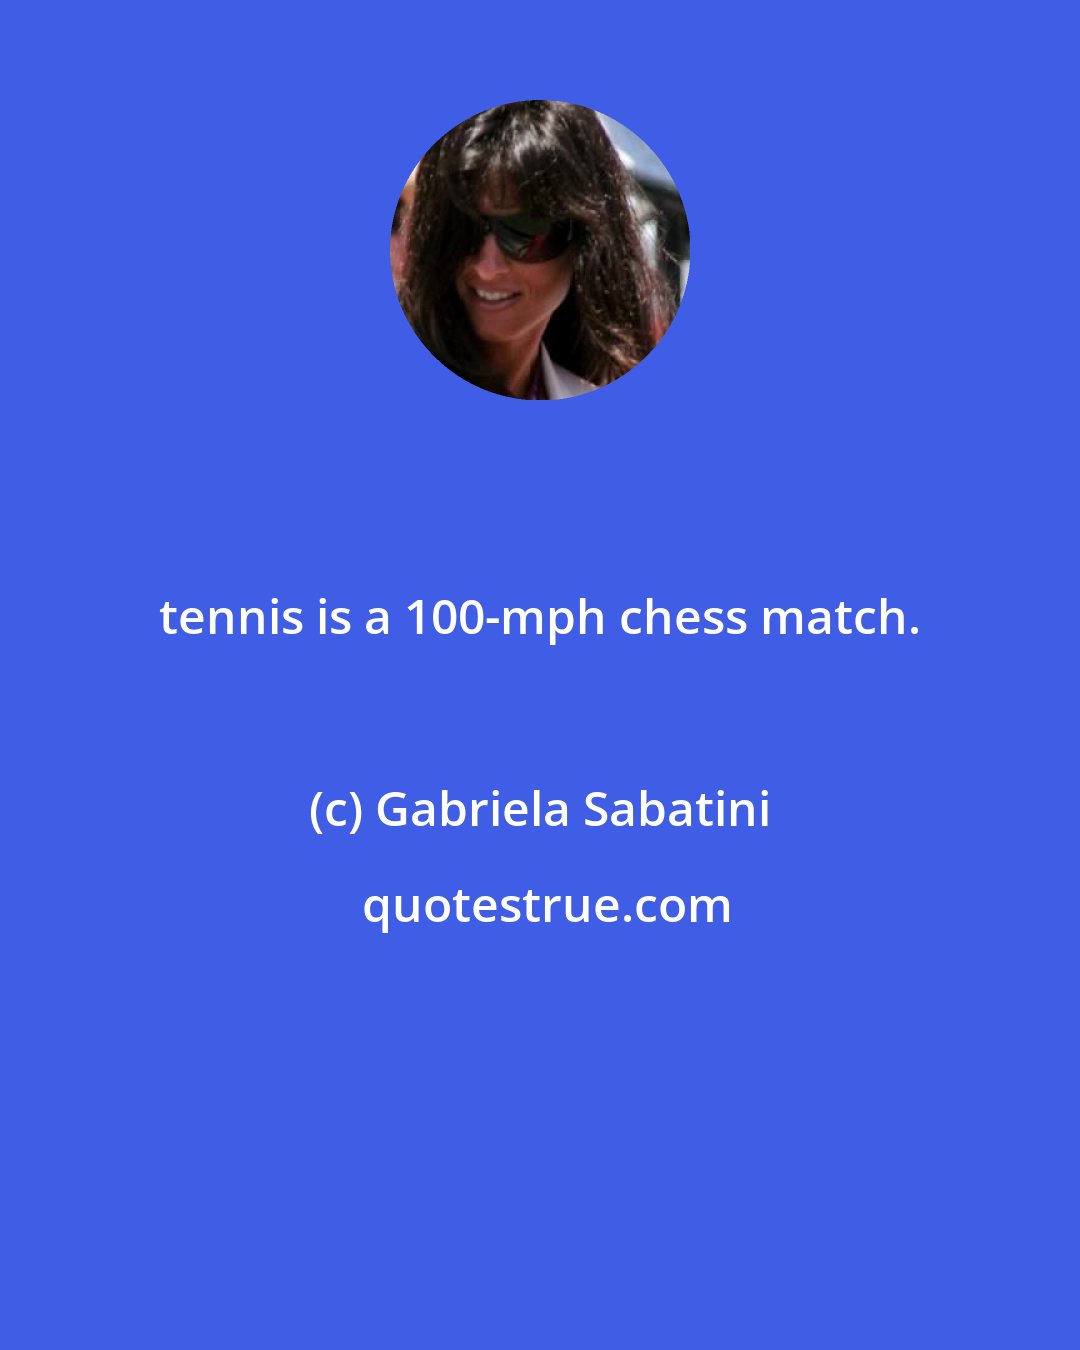 Gabriela Sabatini: tennis is a 100-mph chess match.